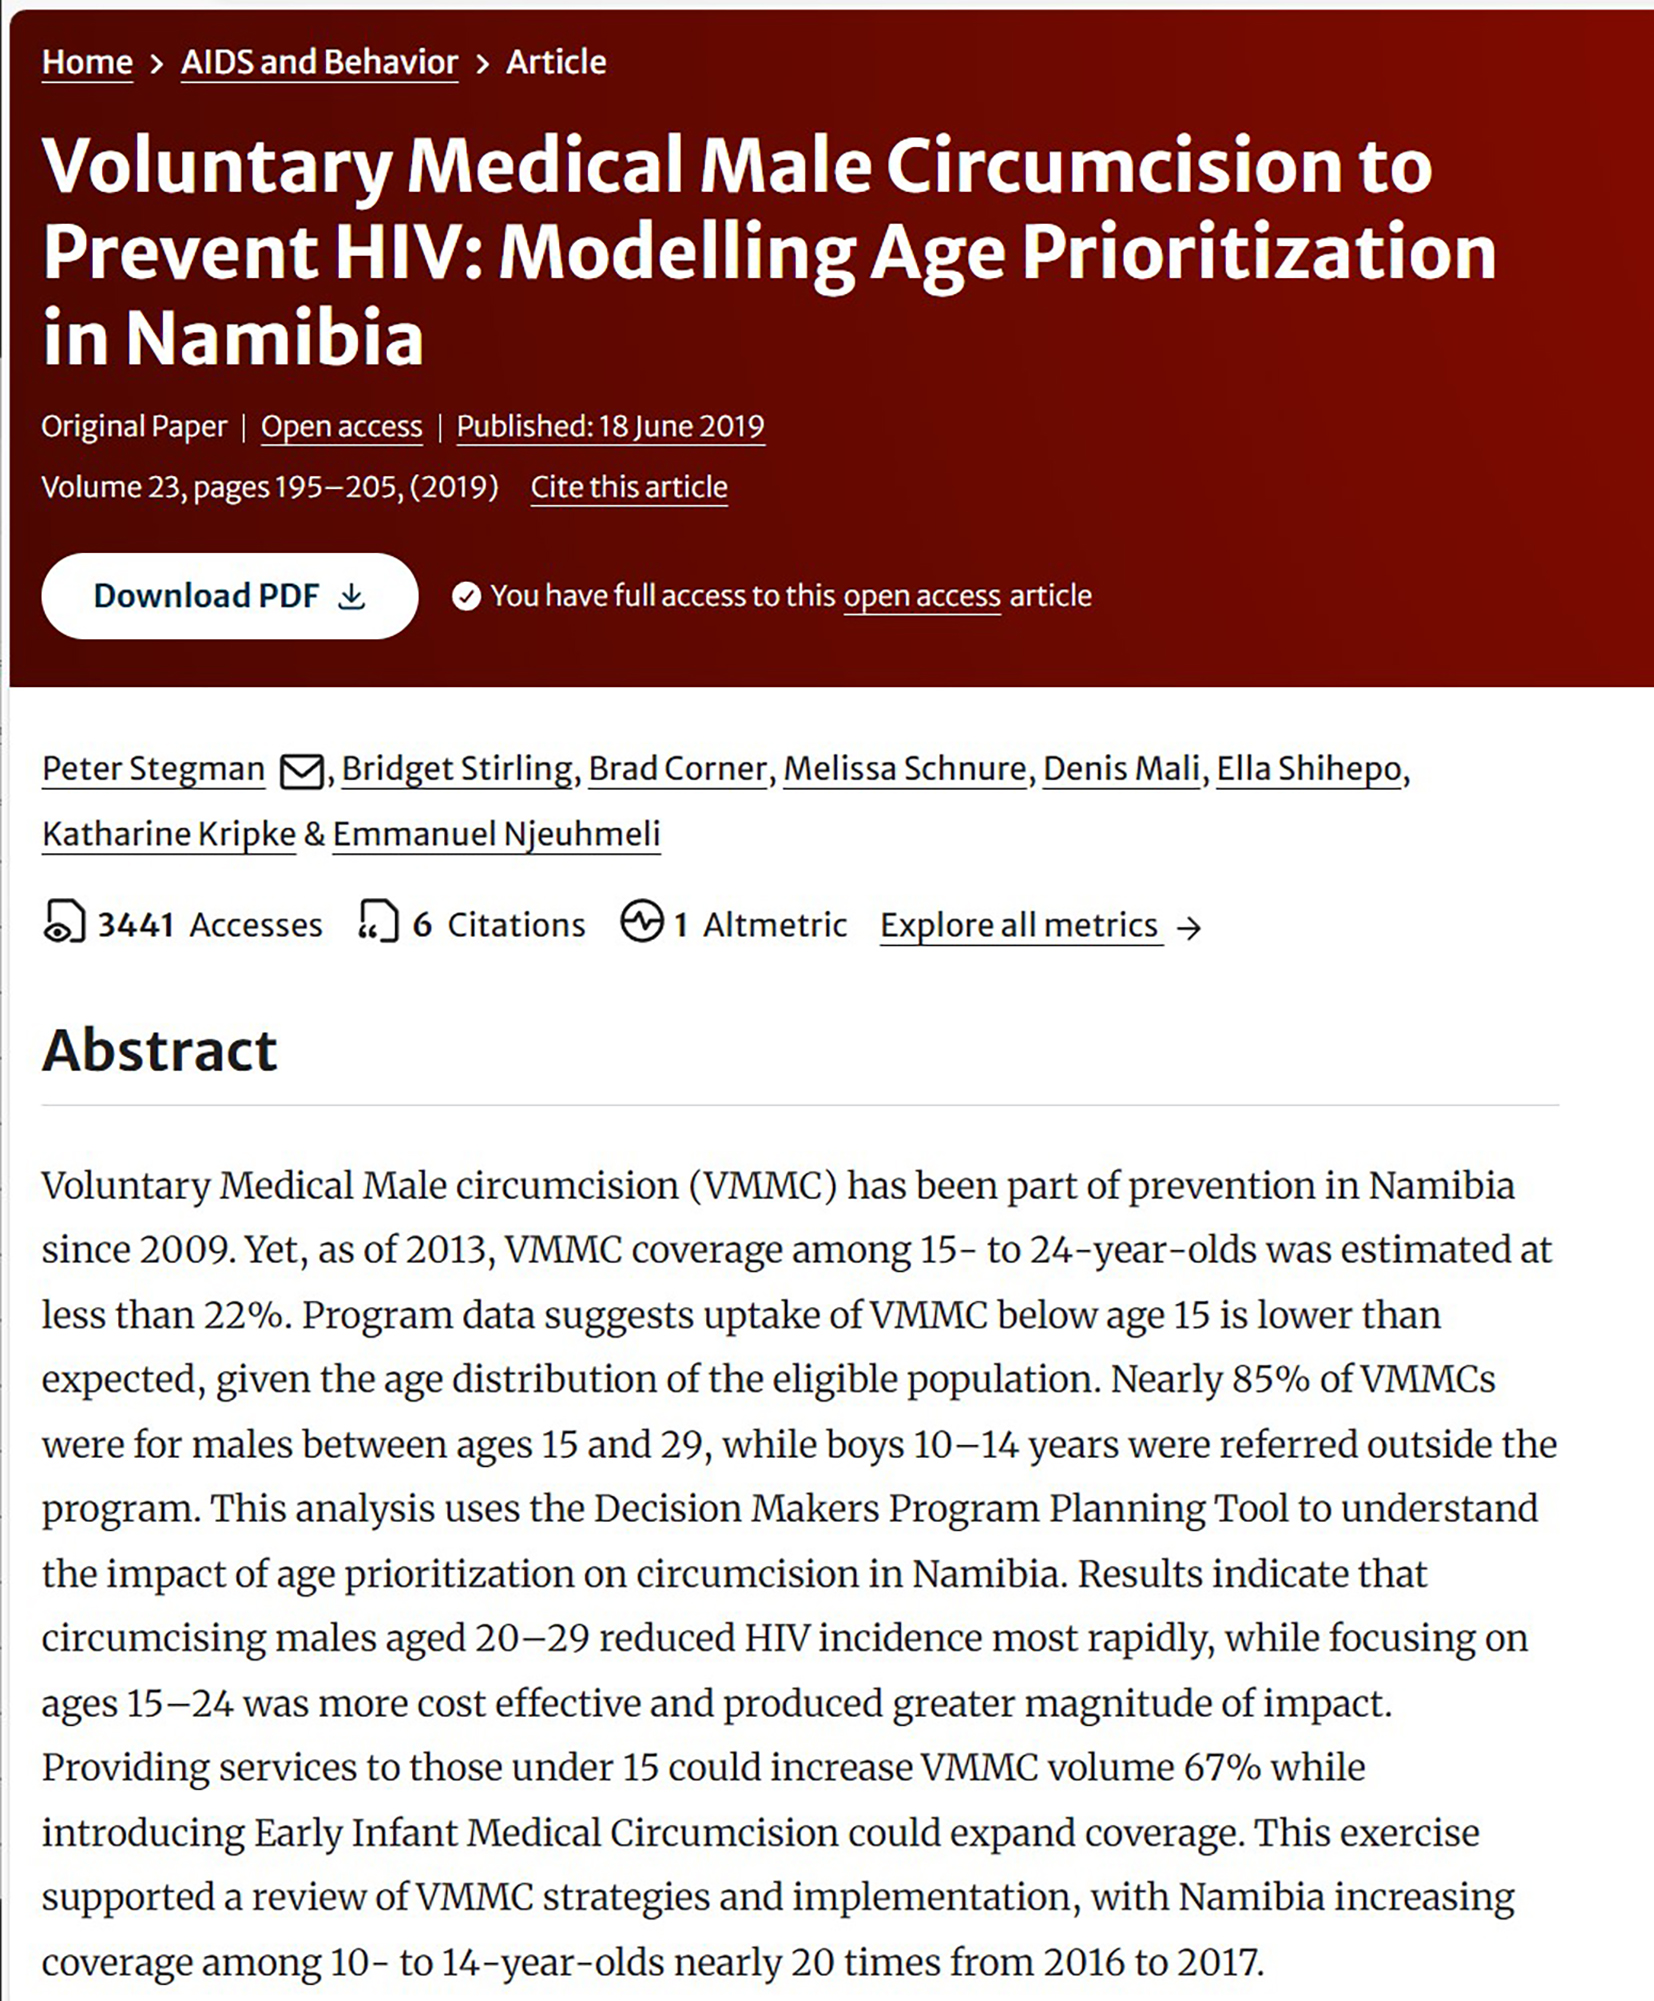 Circoncision masculine médicale volontaire pour prévenir le VIH : Modélisation de la priorisation de l'âge au Na - covermibia